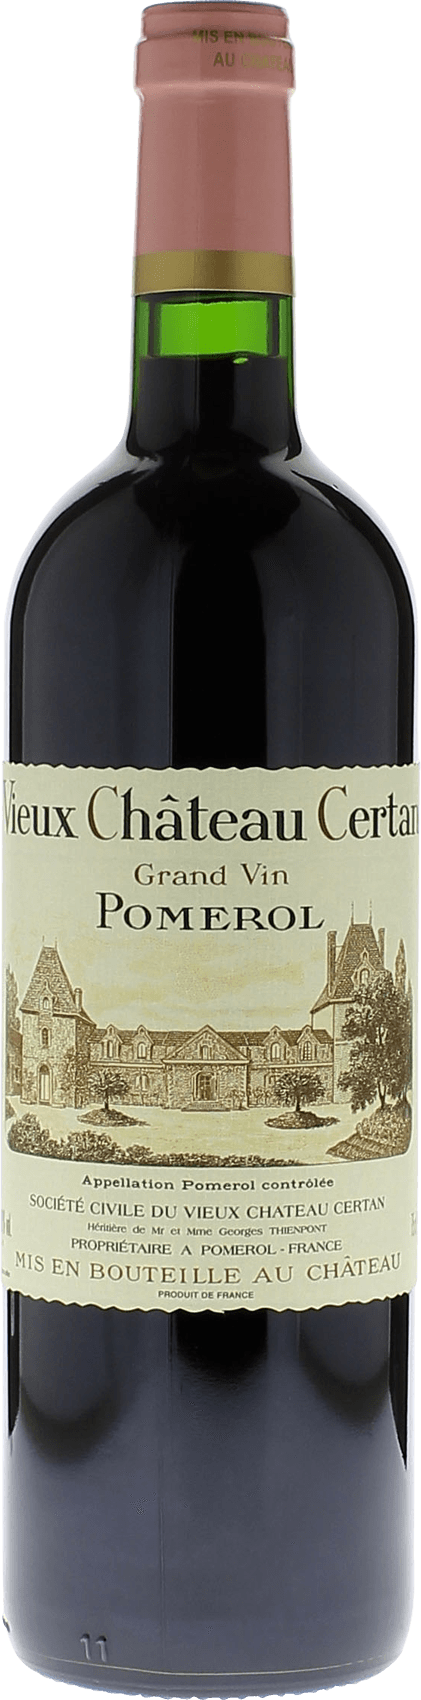 Vieux chteau  certan 1989  Pomerol, Bordeaux rouge